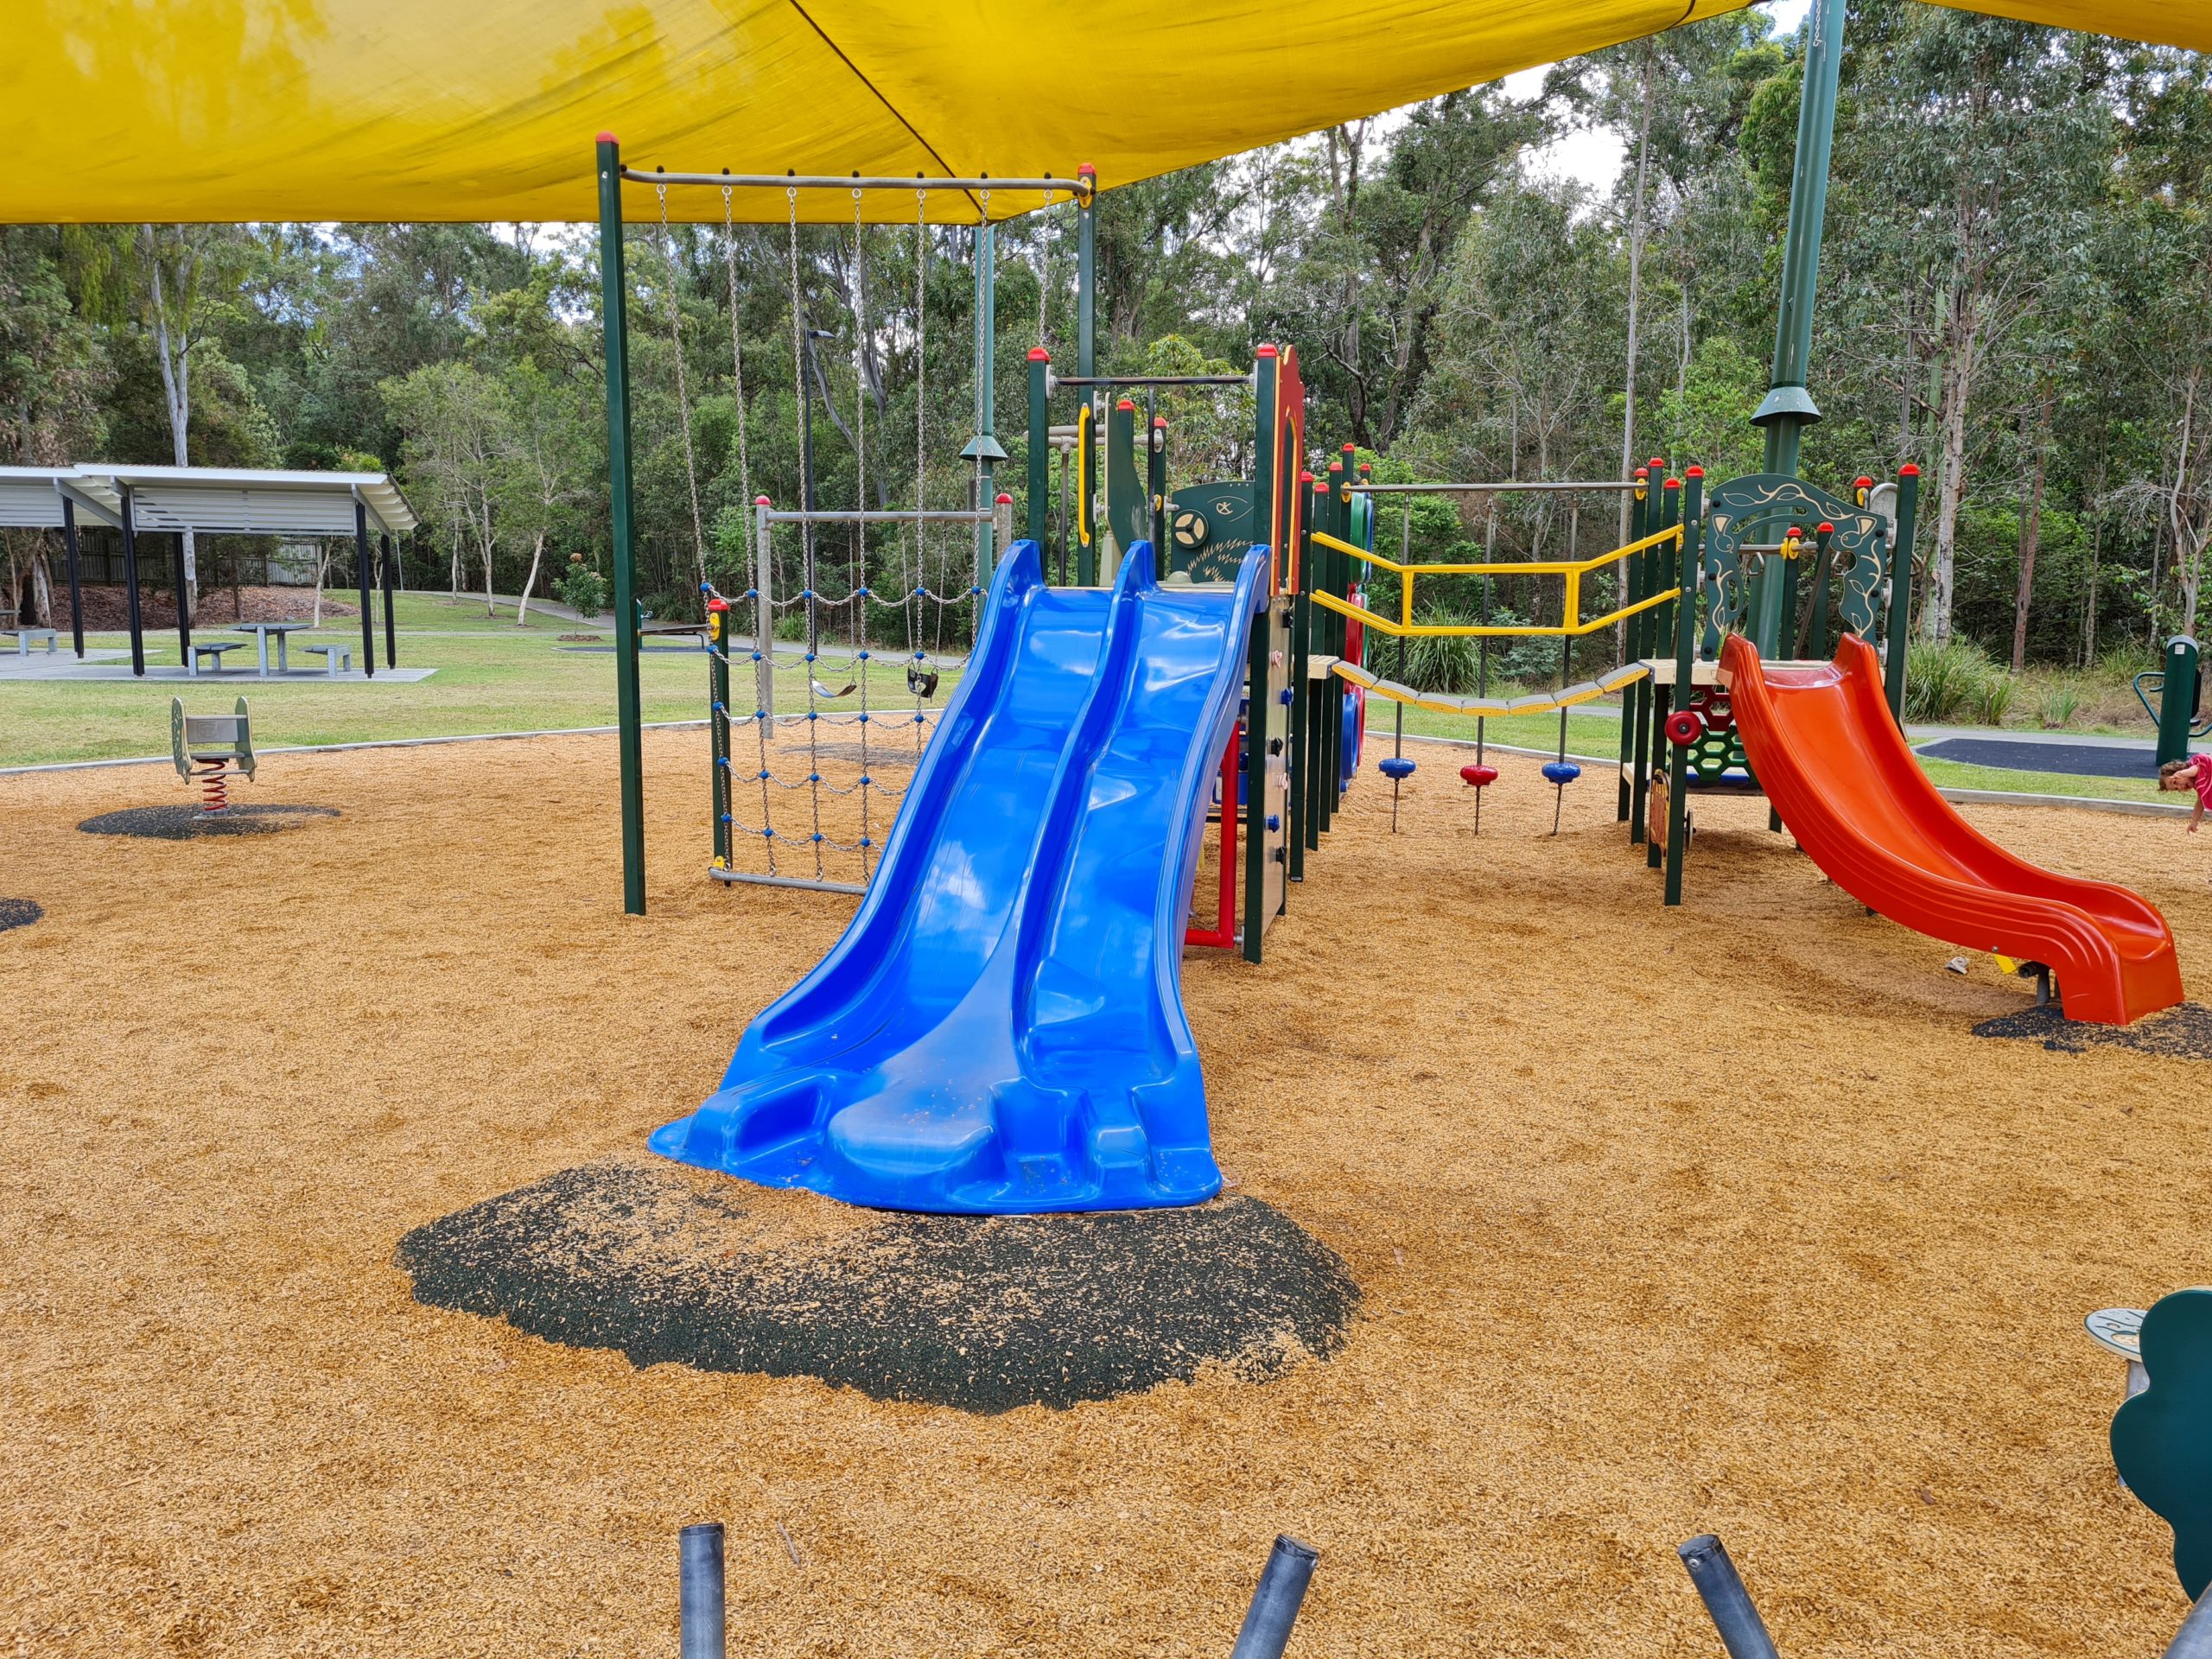 Abraham Park and Playground